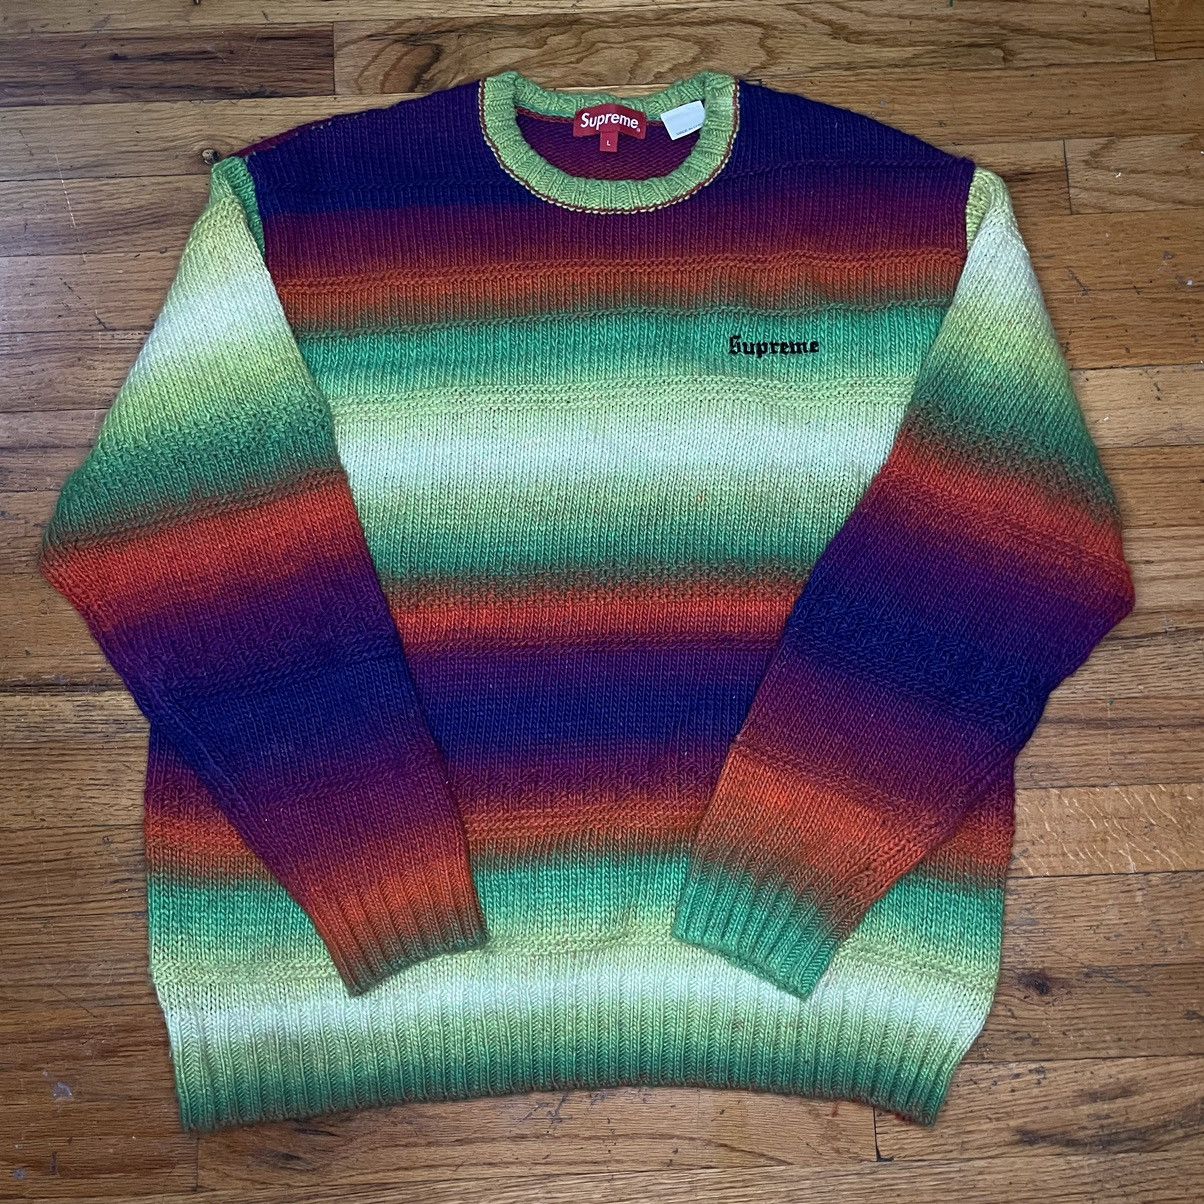 Supreme Gradient Stripe Sweater Multi-